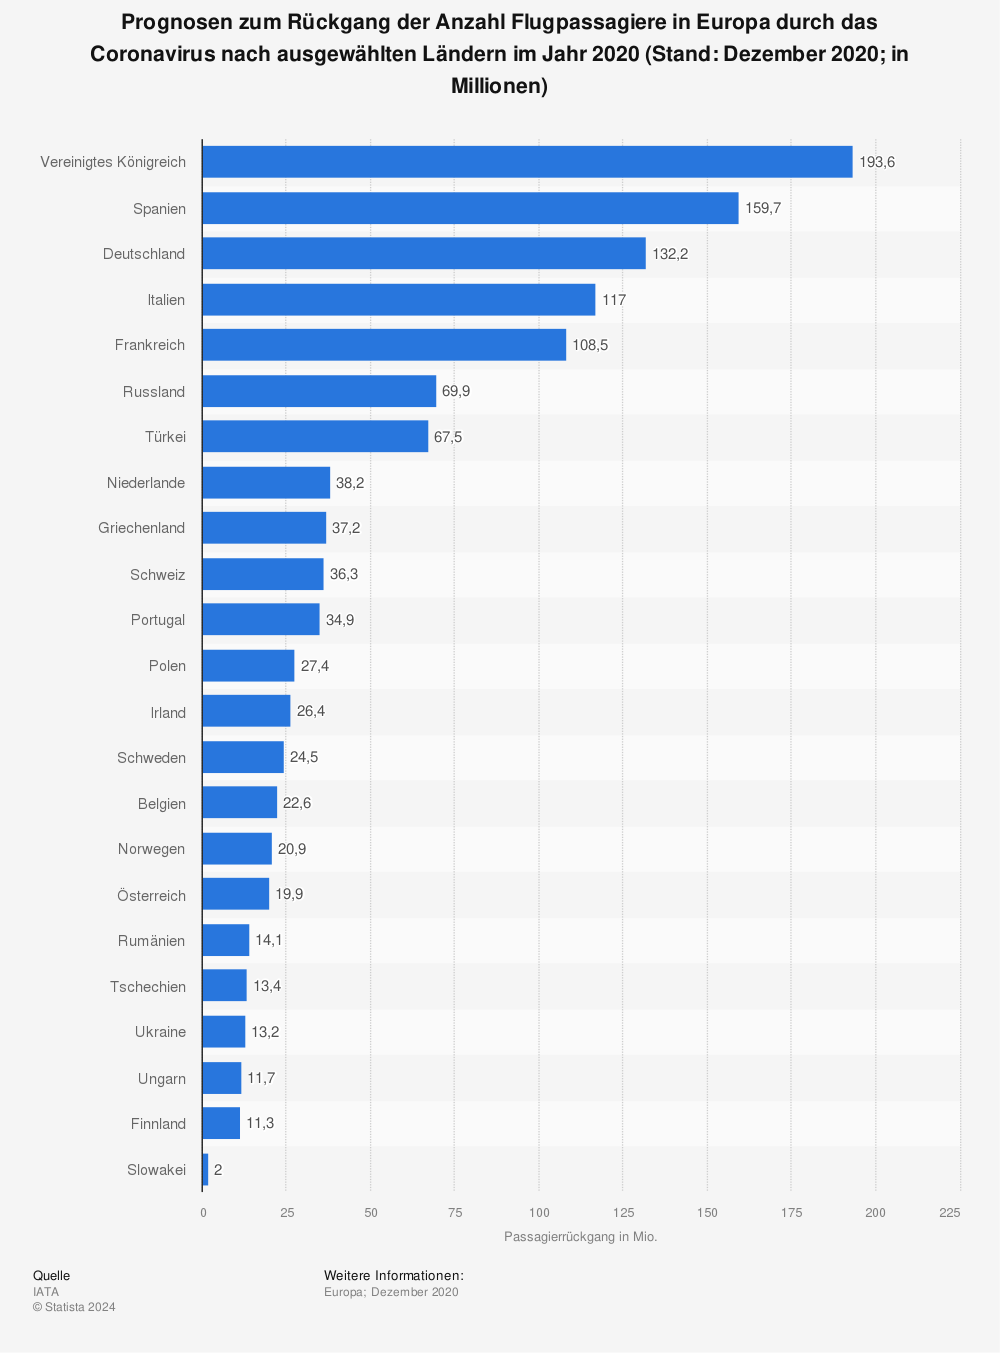 Statistik: Prognosen zum Rückgang der Anzahl Flugpassagiere in Europa durch das Coronavirus nach ausgewählten Ländern im Jahr 2020 (Stand: Dezember 2020; in Millionen) | Statista